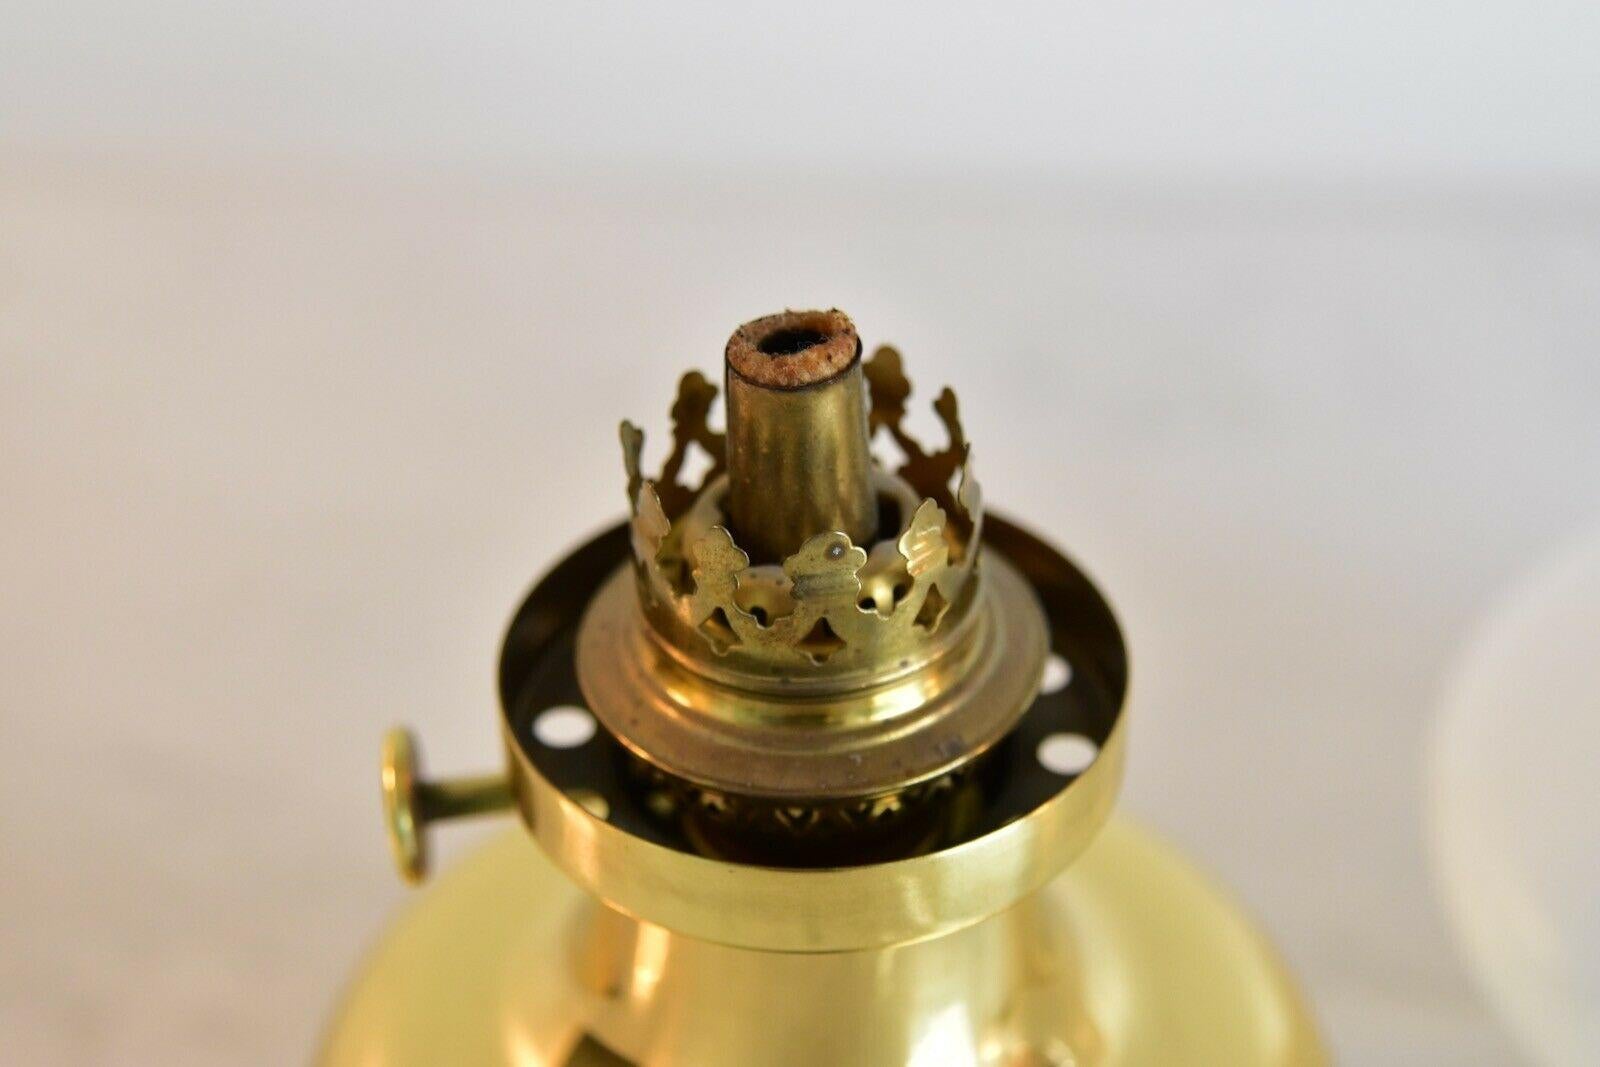 Brass Henning Koppel brass Petronella Oil Lamp by Louis Poulsen, Denmark